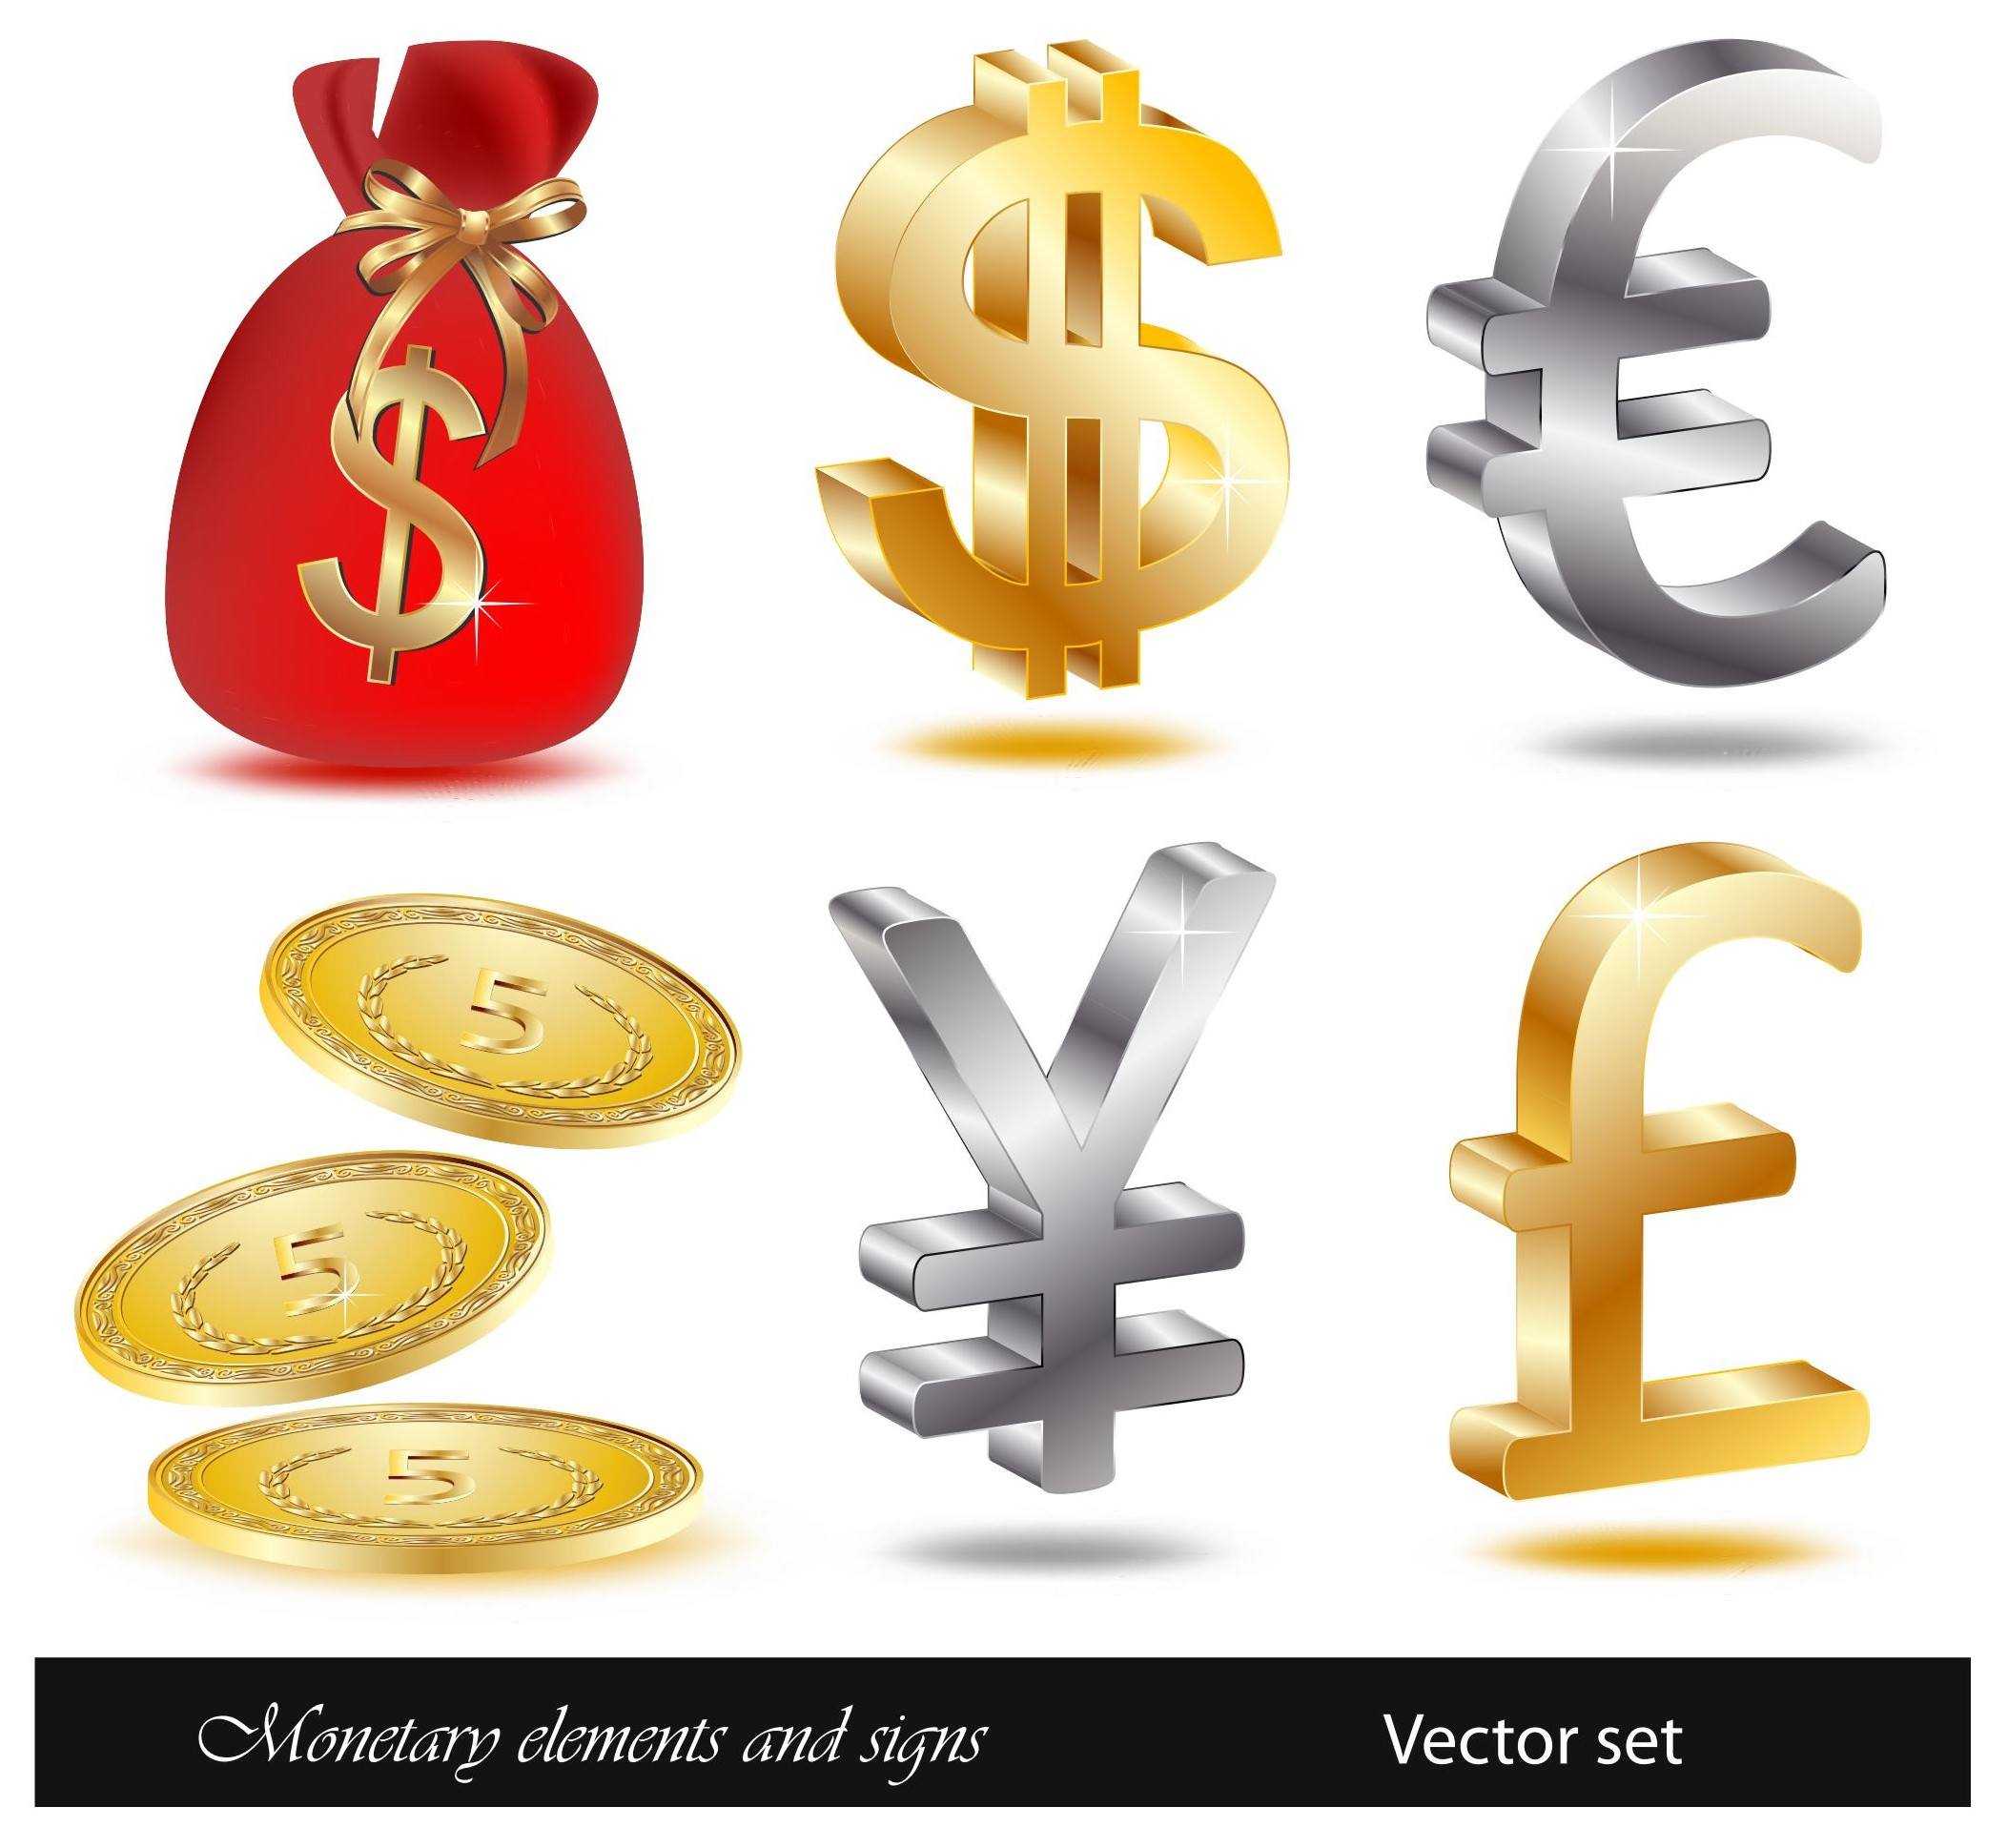 Financial icon vectors 01